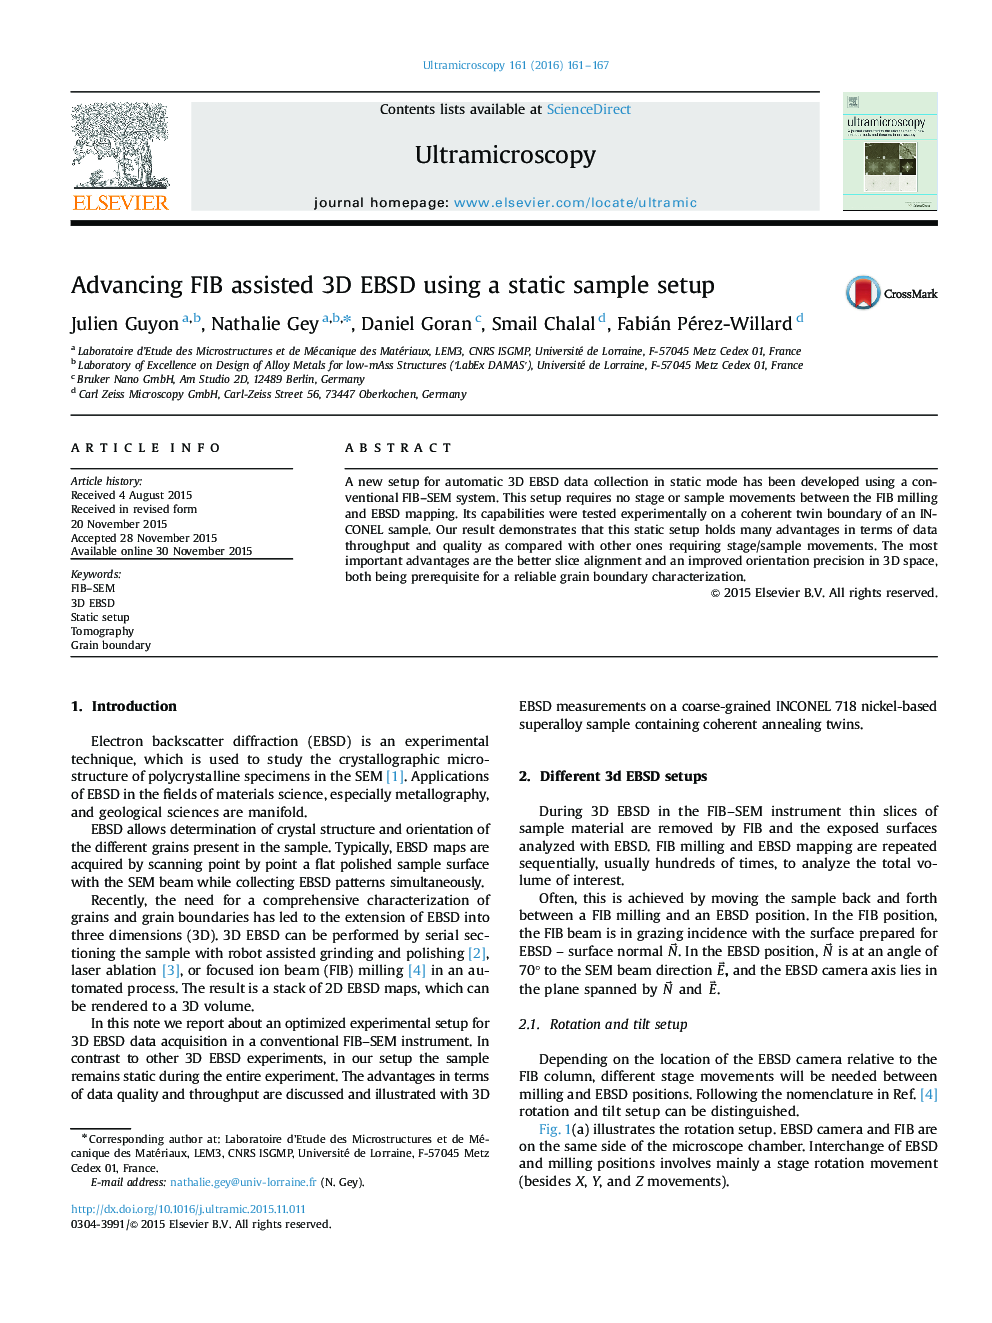 Advancing FIB assisted 3D EBSD using a static sample setup